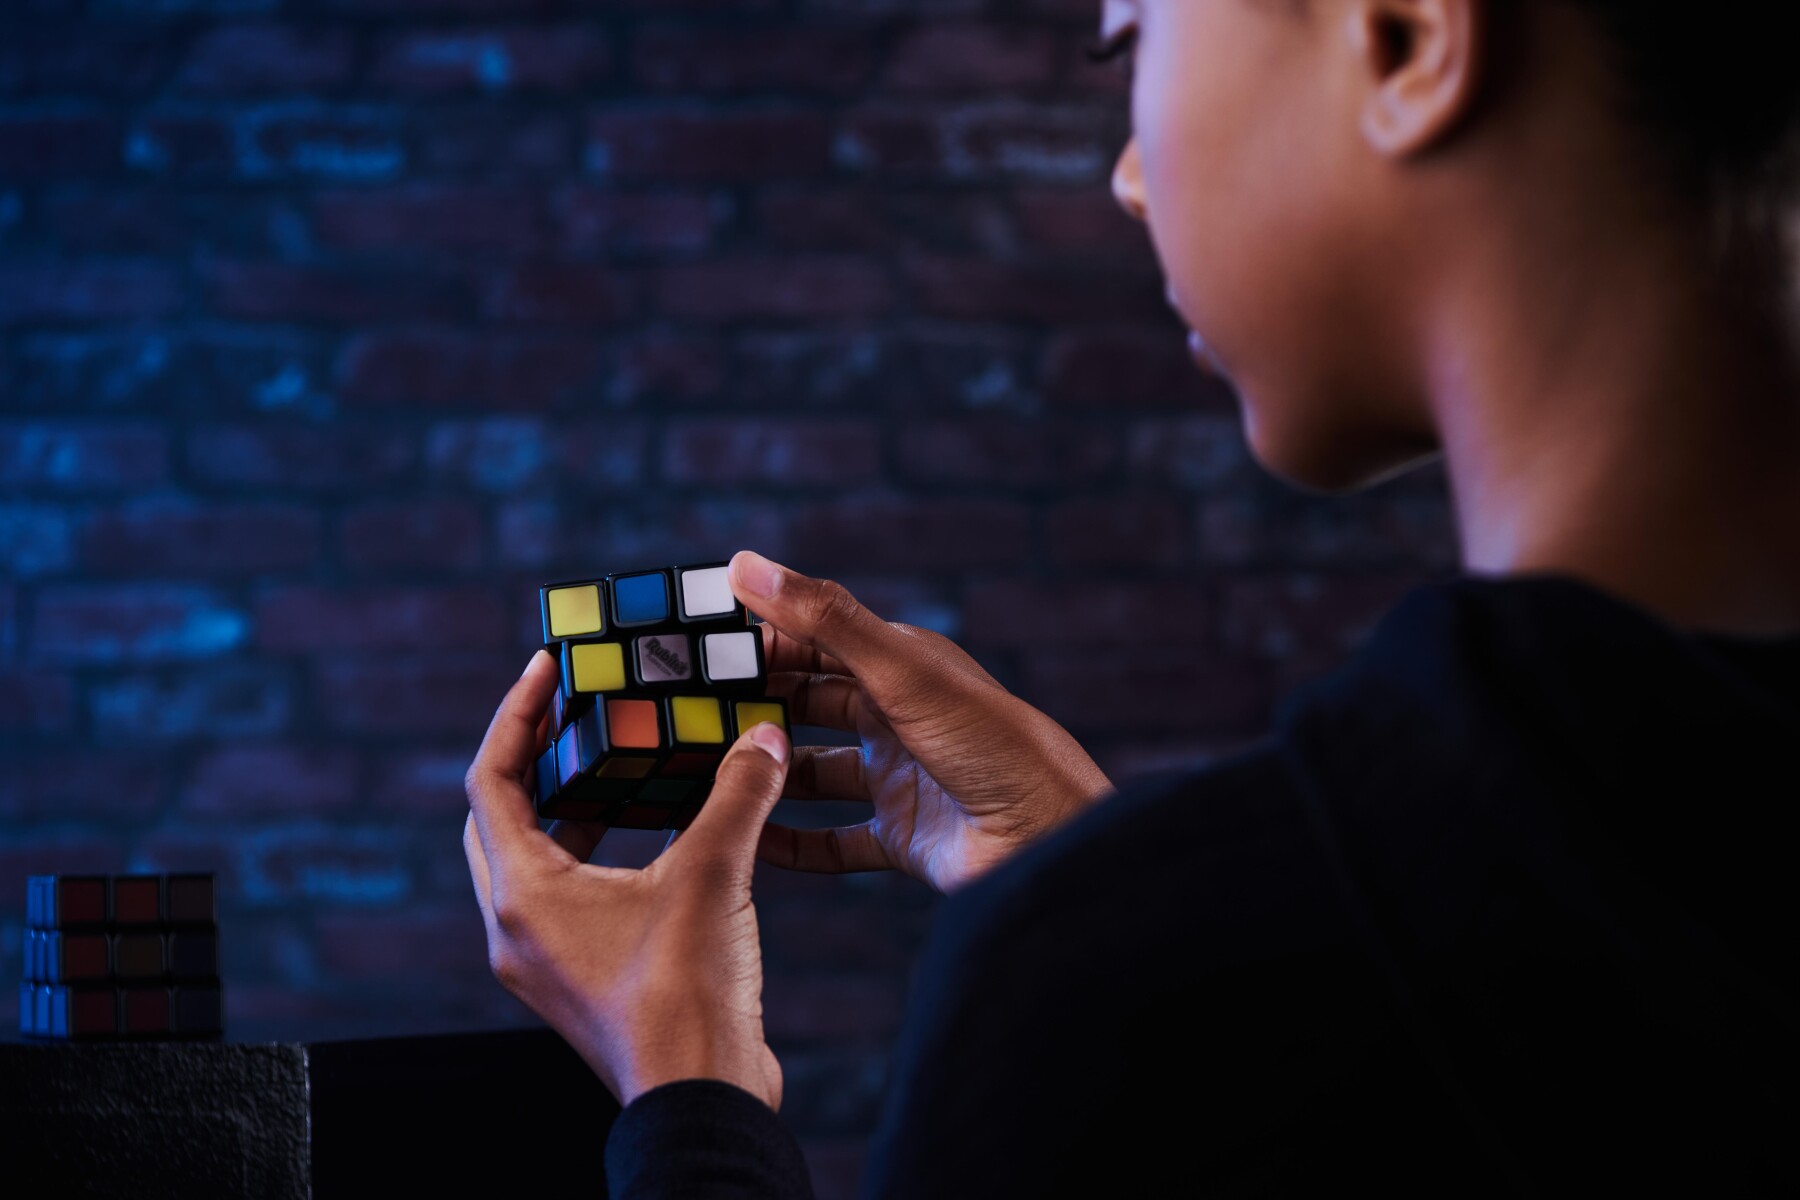 Cubo di rubik 3x3 - ideale come antistress e come gioco da viaggio - rompicapo per adulti e bambini - cubo rubik originale con tecnologia termocromatica - 